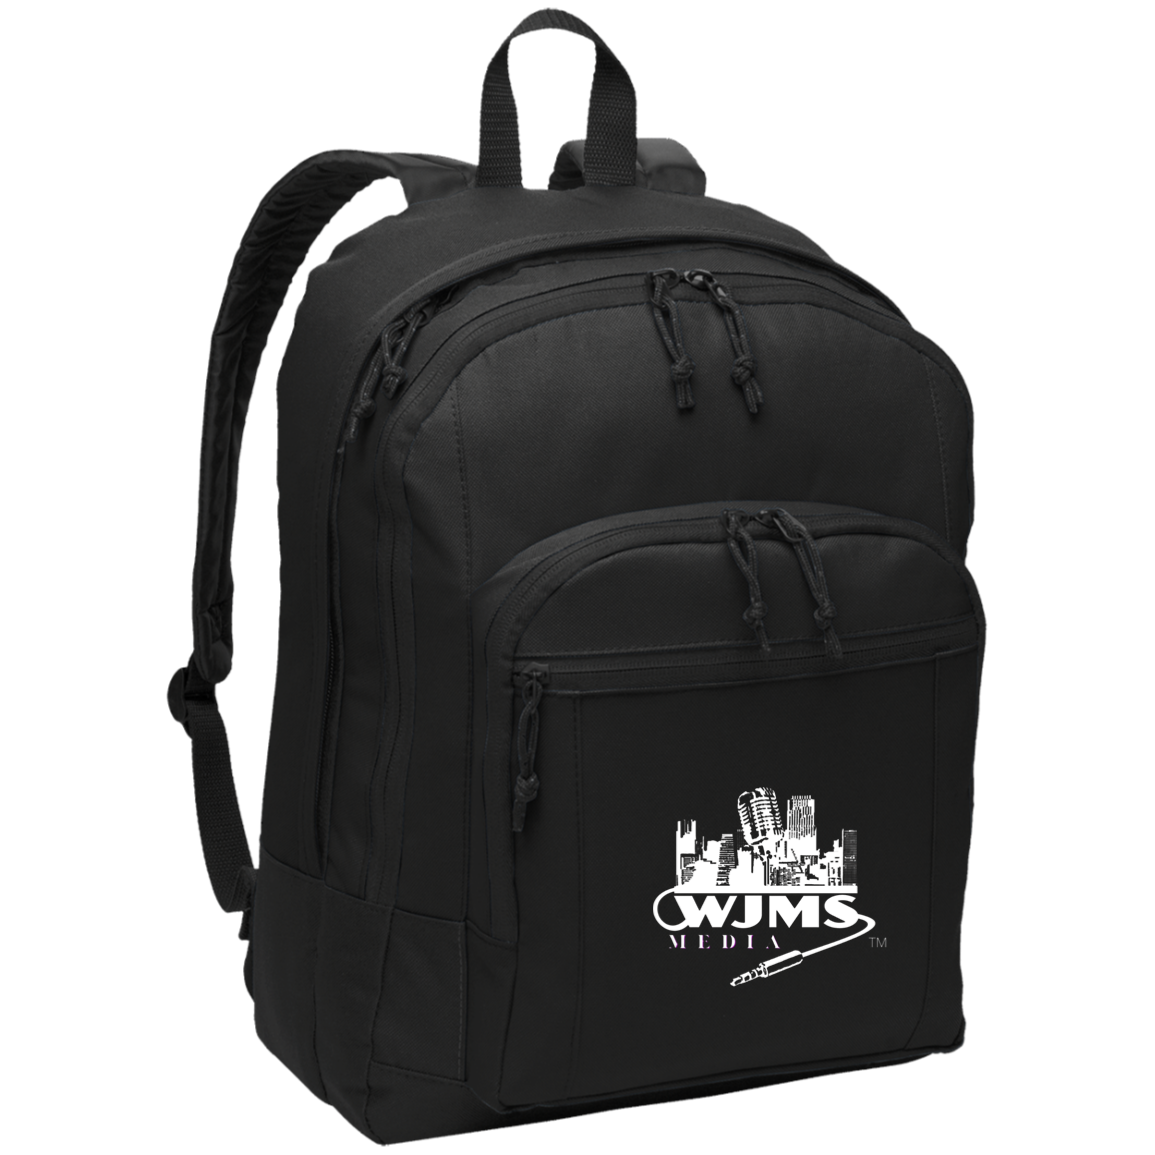 WJMS Basic Backpack